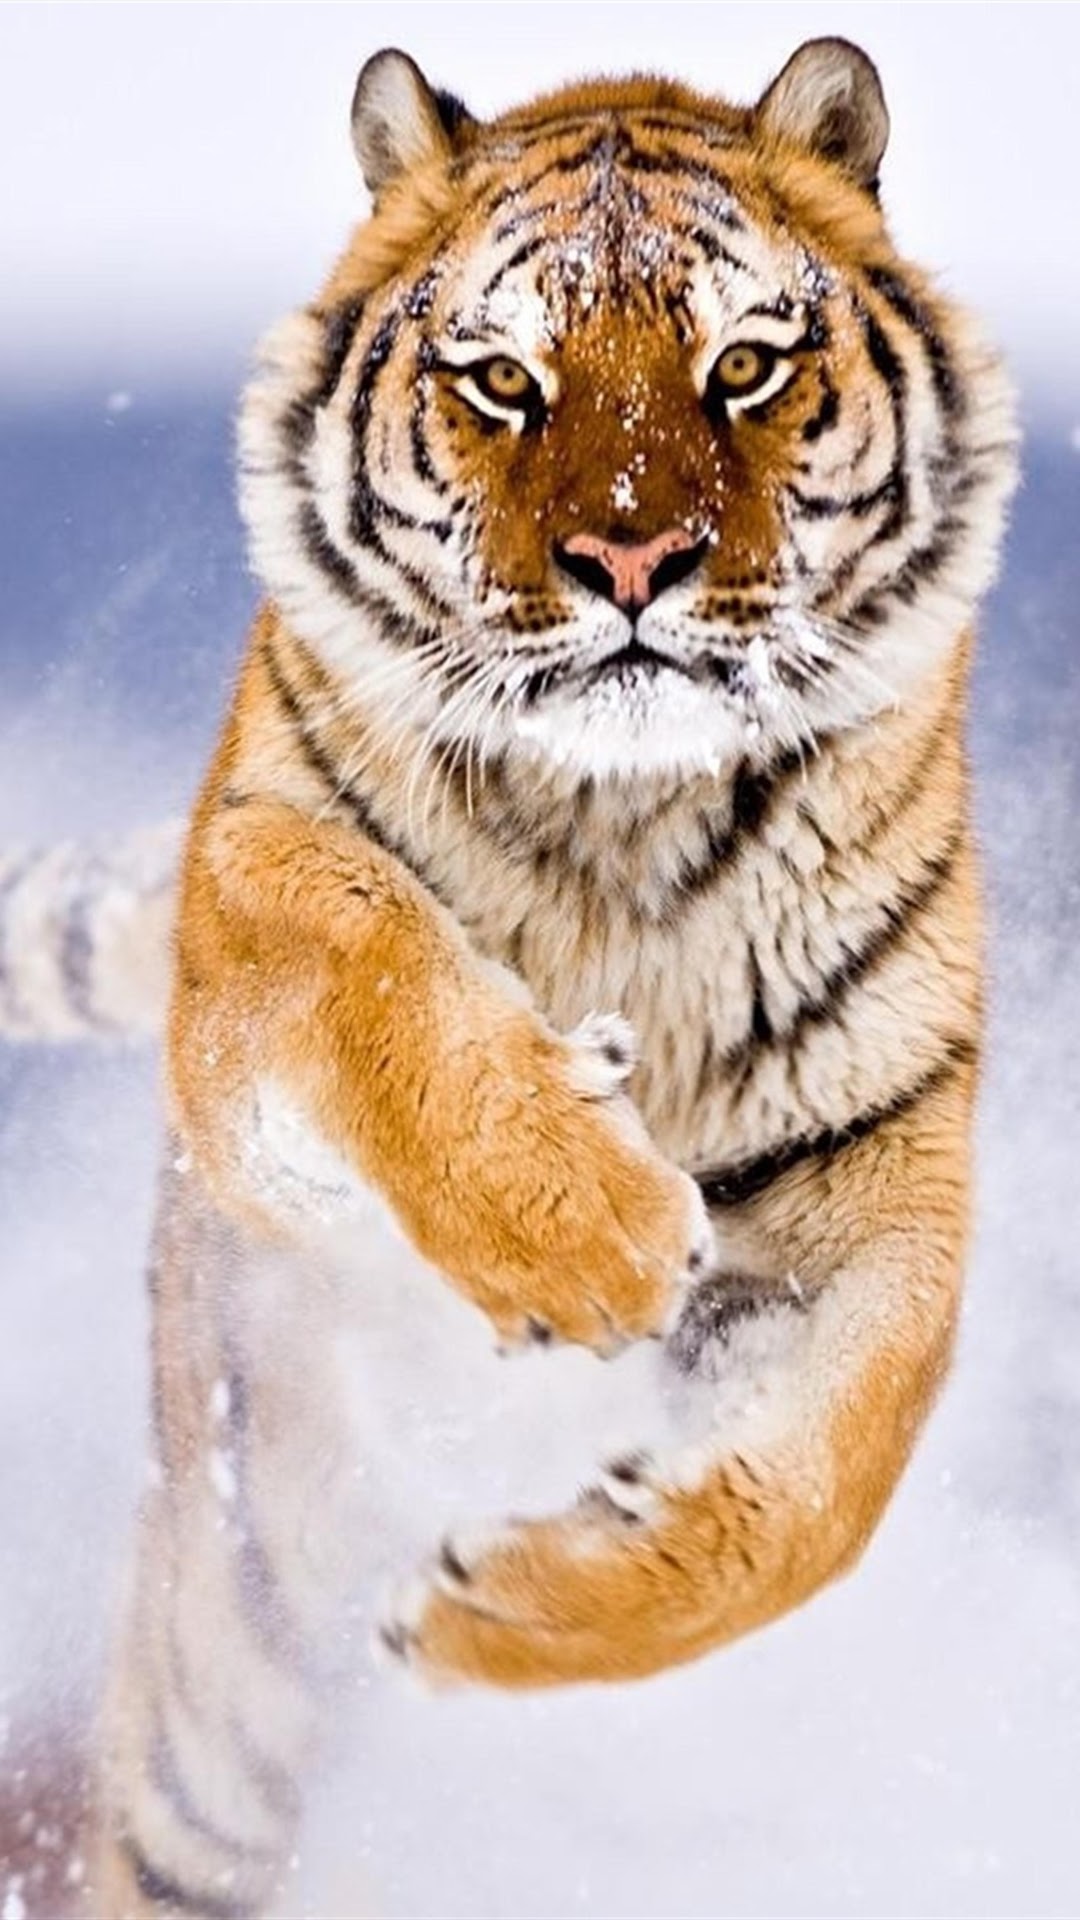 Tiger, Running, 8k, 7680x4320, - Tiger Wallpaper Hd - HD Wallpaper 